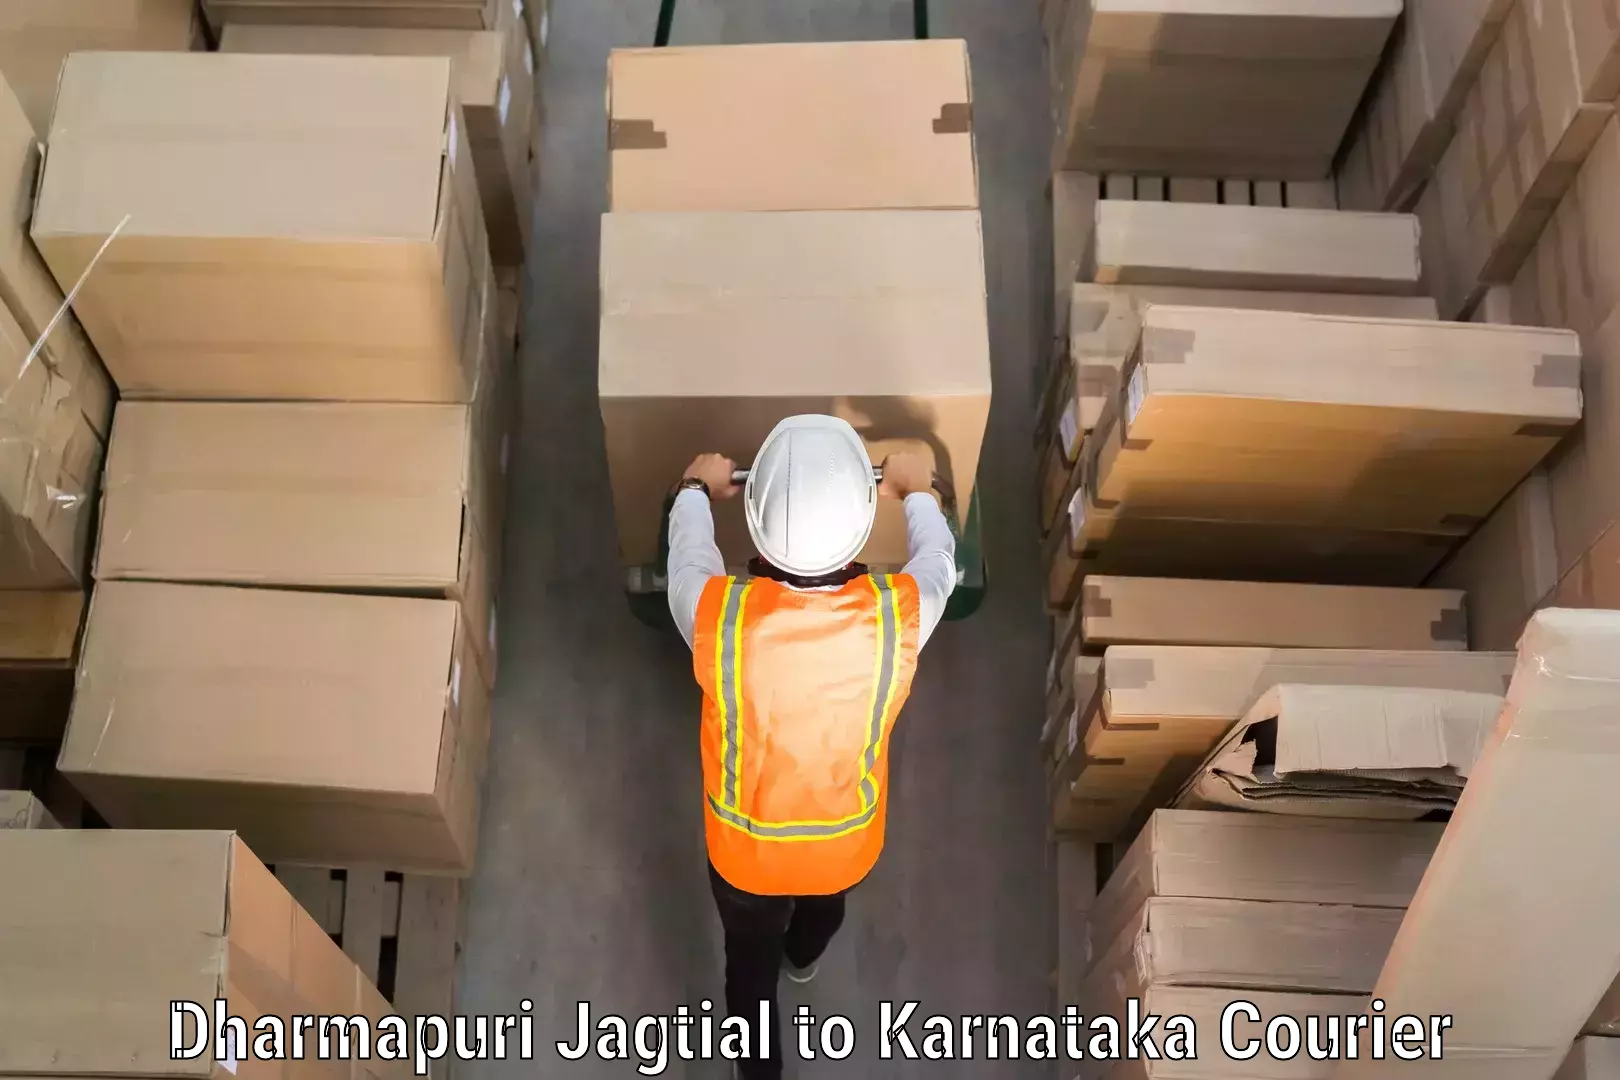 Luggage storage and delivery Dharmapuri Jagtial to Kerur